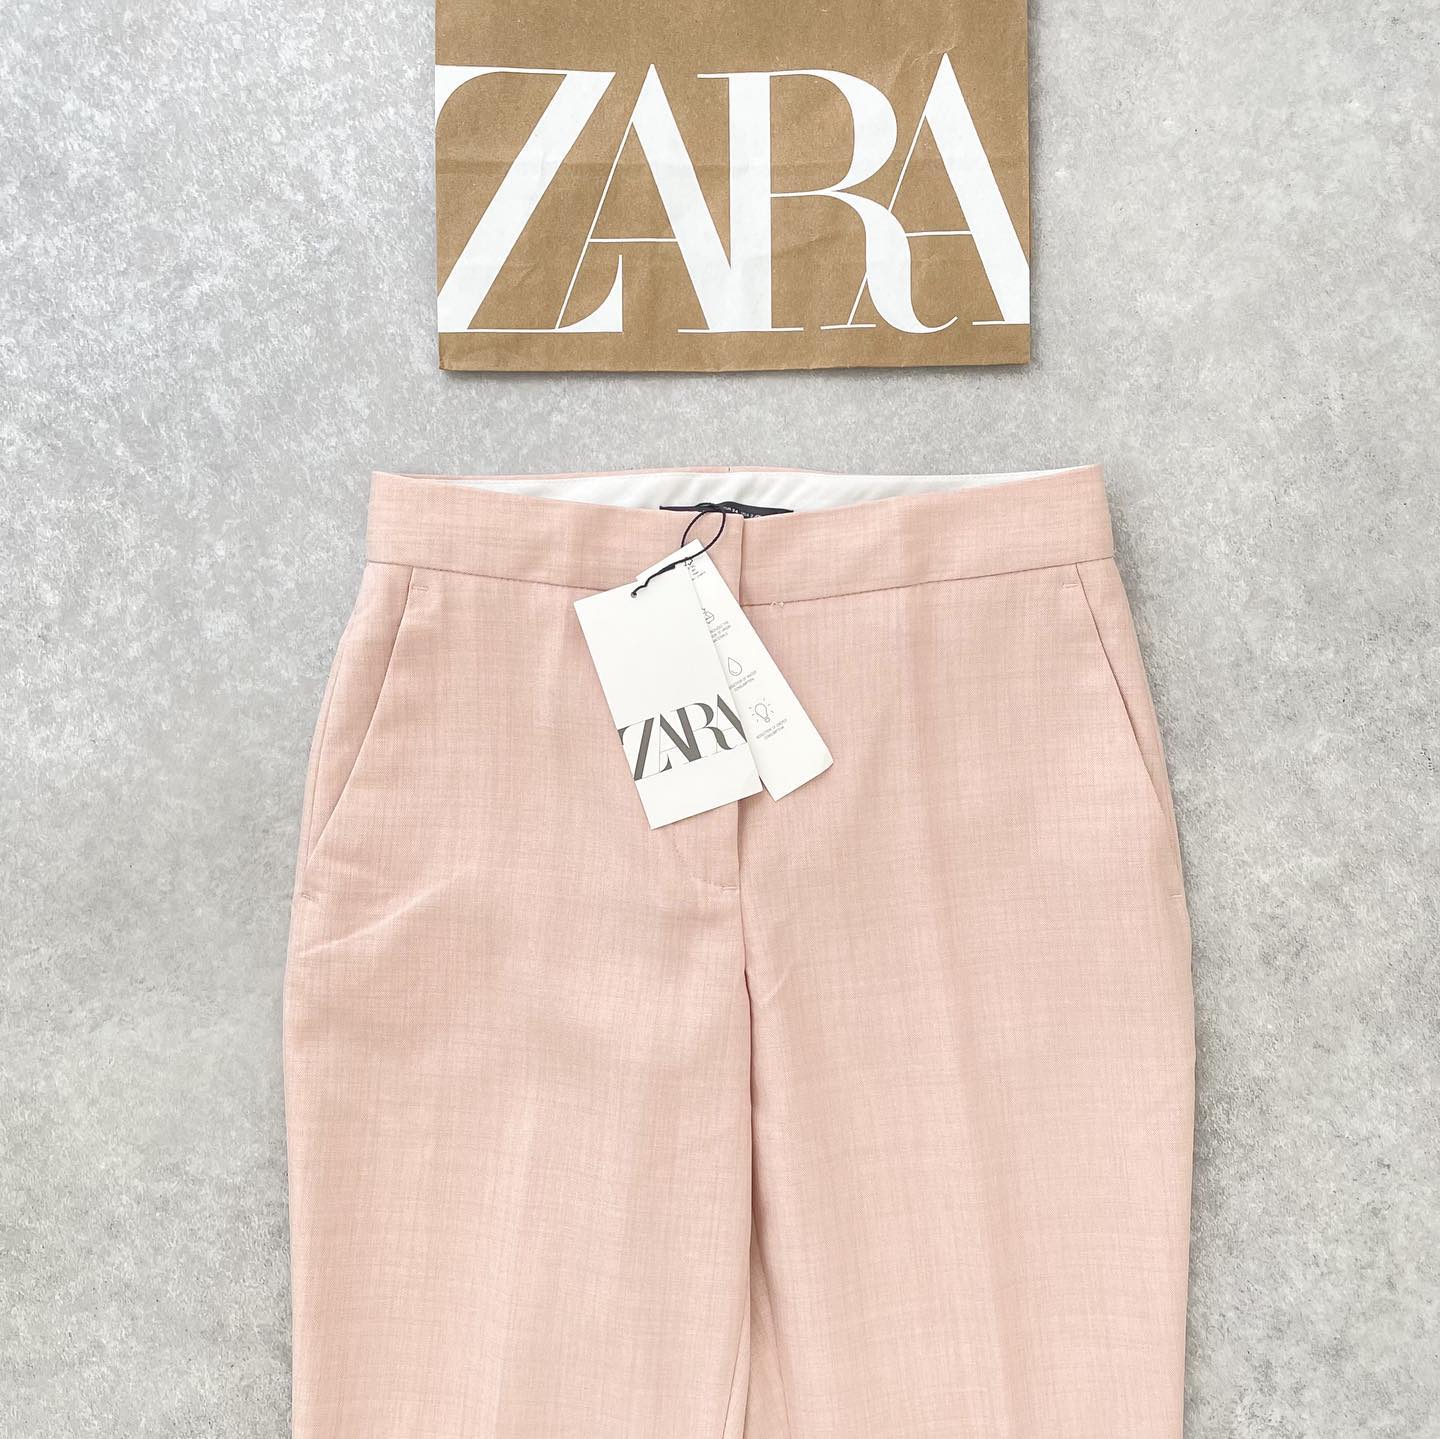 「薄ピンクって、ほんと使えるよね」【ZARA】の春夏”ピンクアイテム”2選